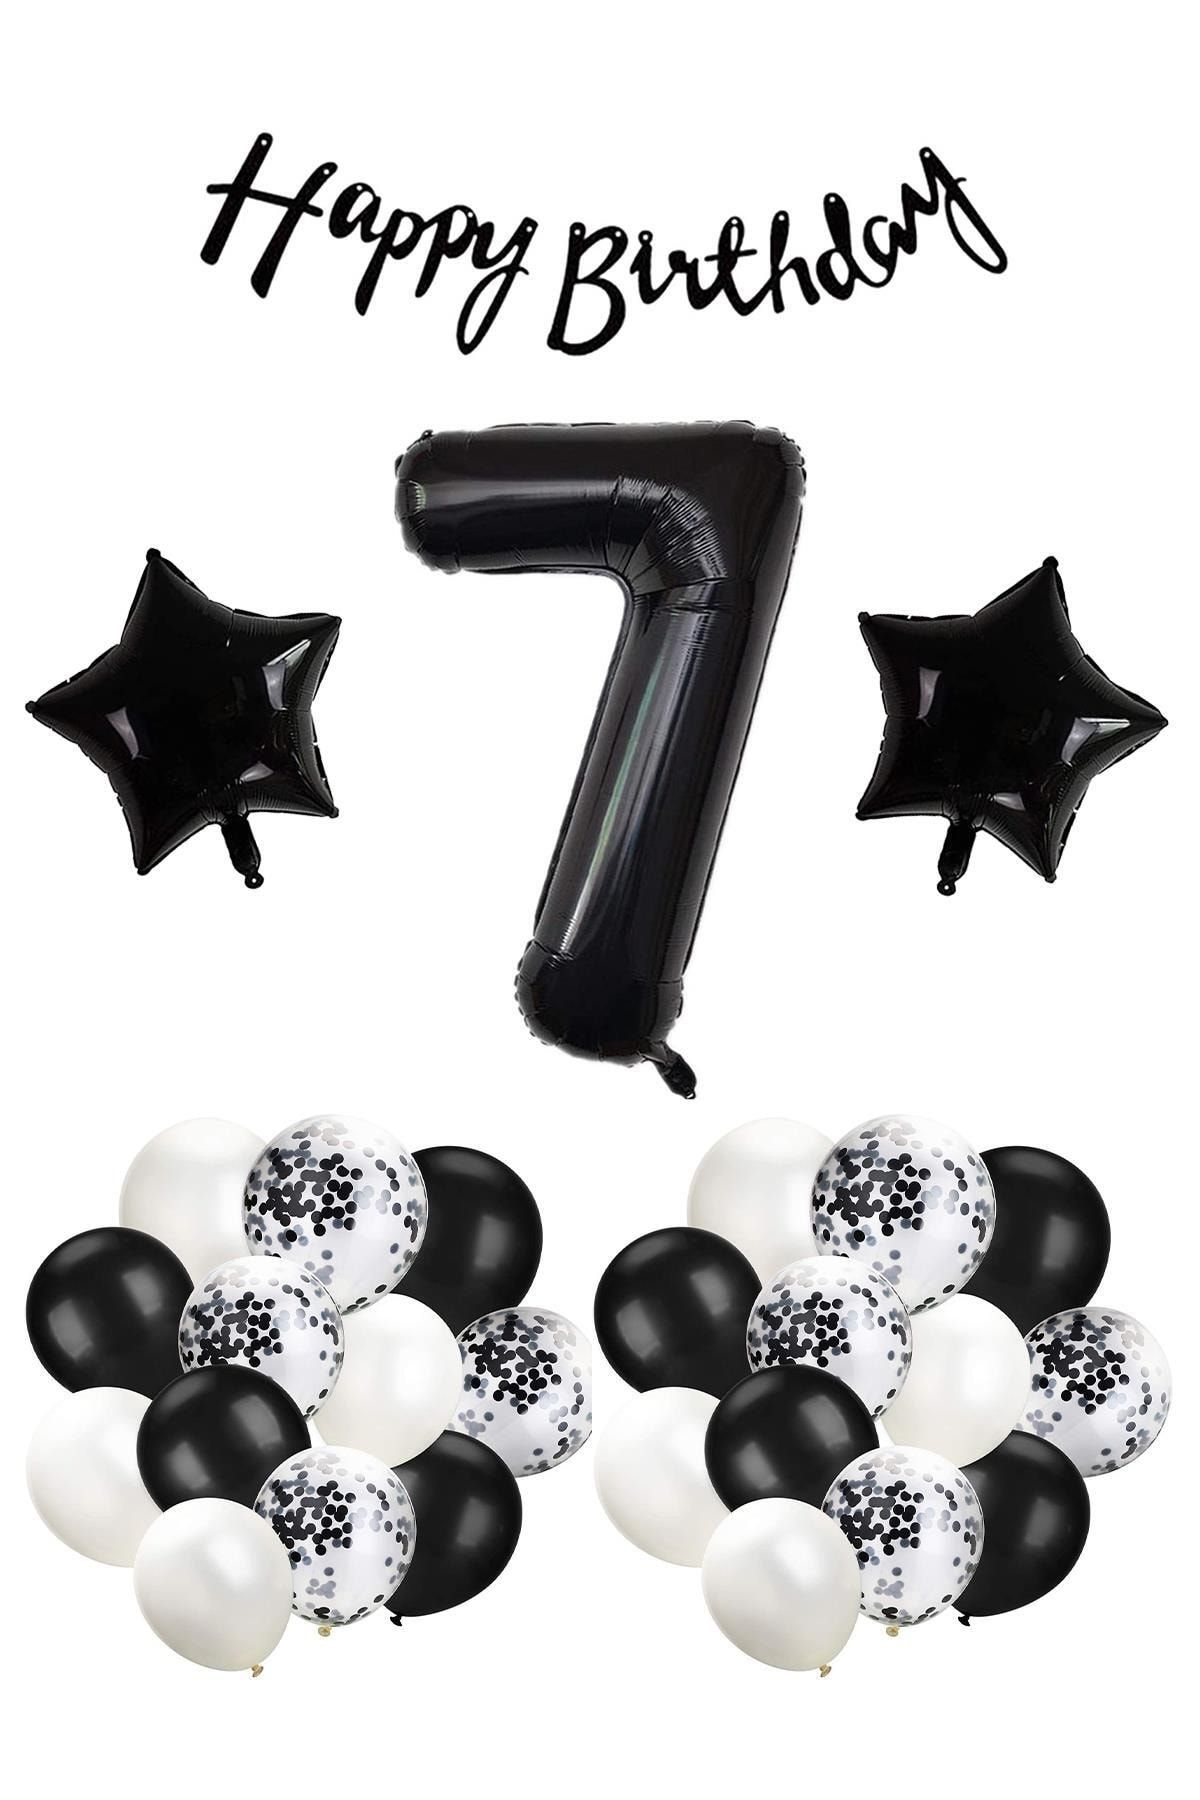 Patladı Gitti Siyah Konsept 7 Yaş Doğum Günü Kutlama Seti; Beyaz Siyah Konfetili Balon, Rakam Yıldız Folyo Ve Bann